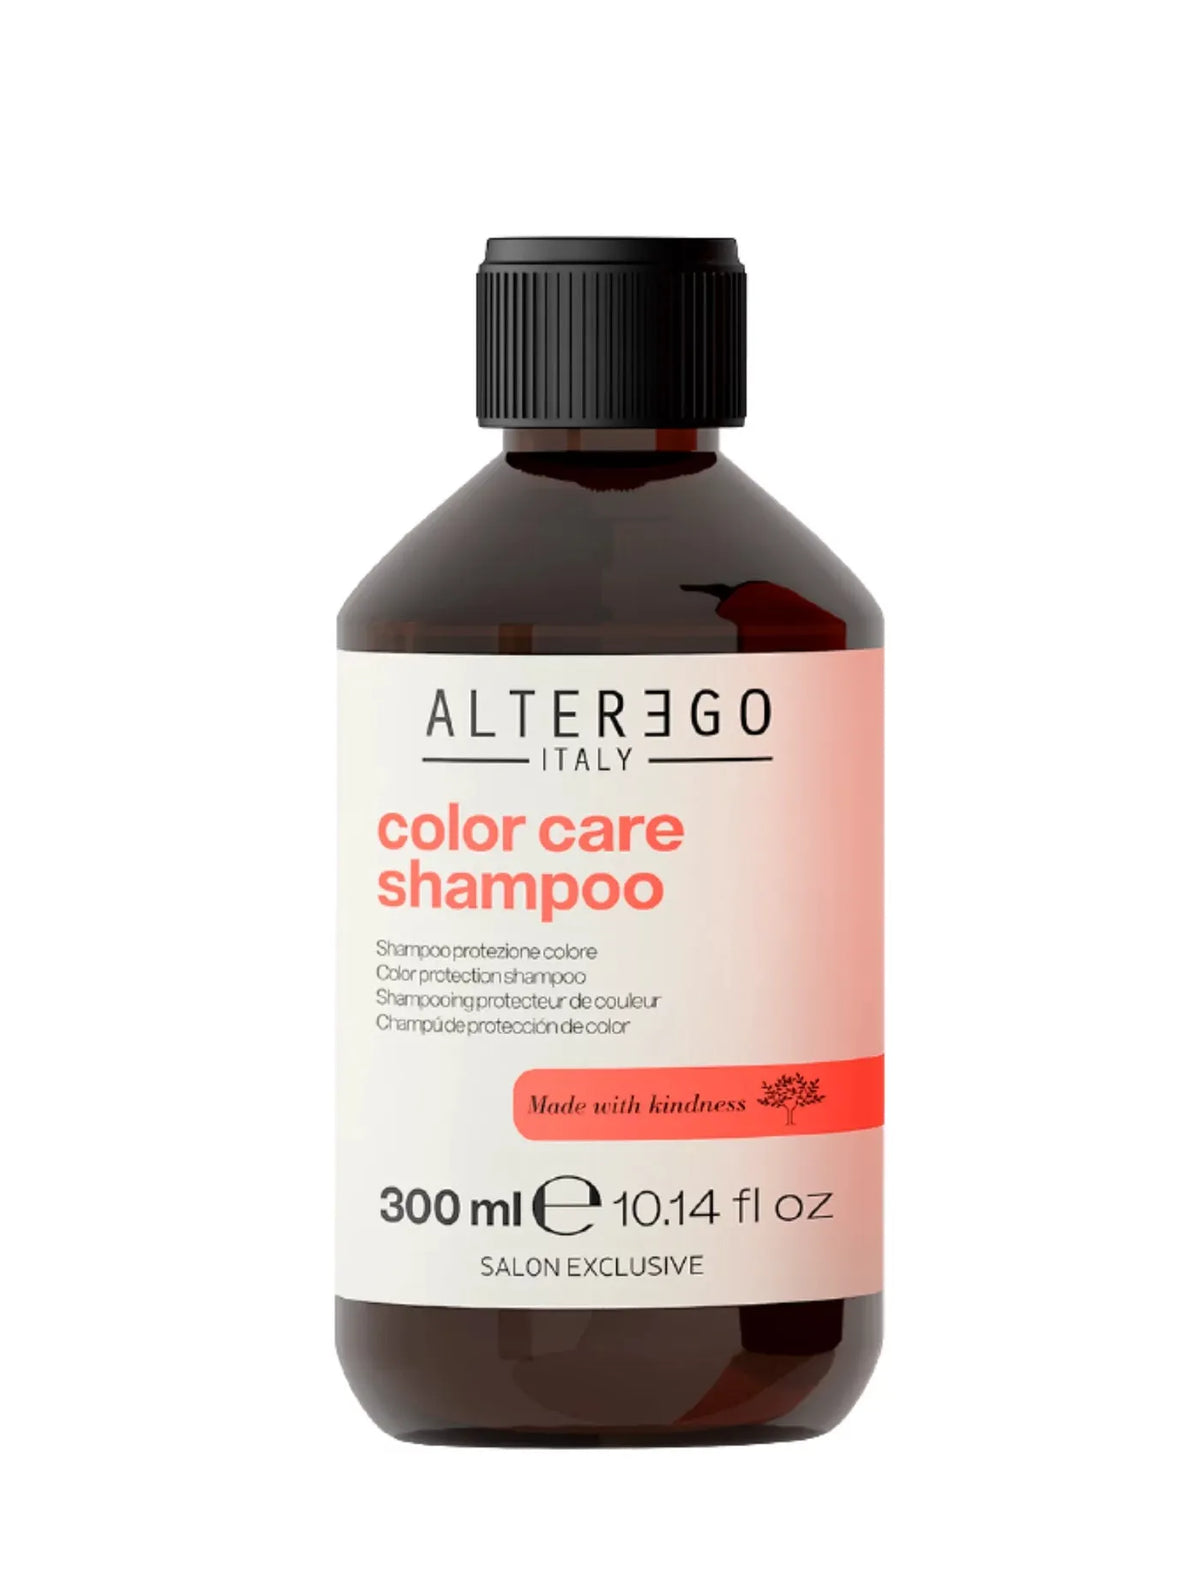 ALTEREGO Шампунь для окрашенных волос COLOR CARE SHAMPOO - Шампунь